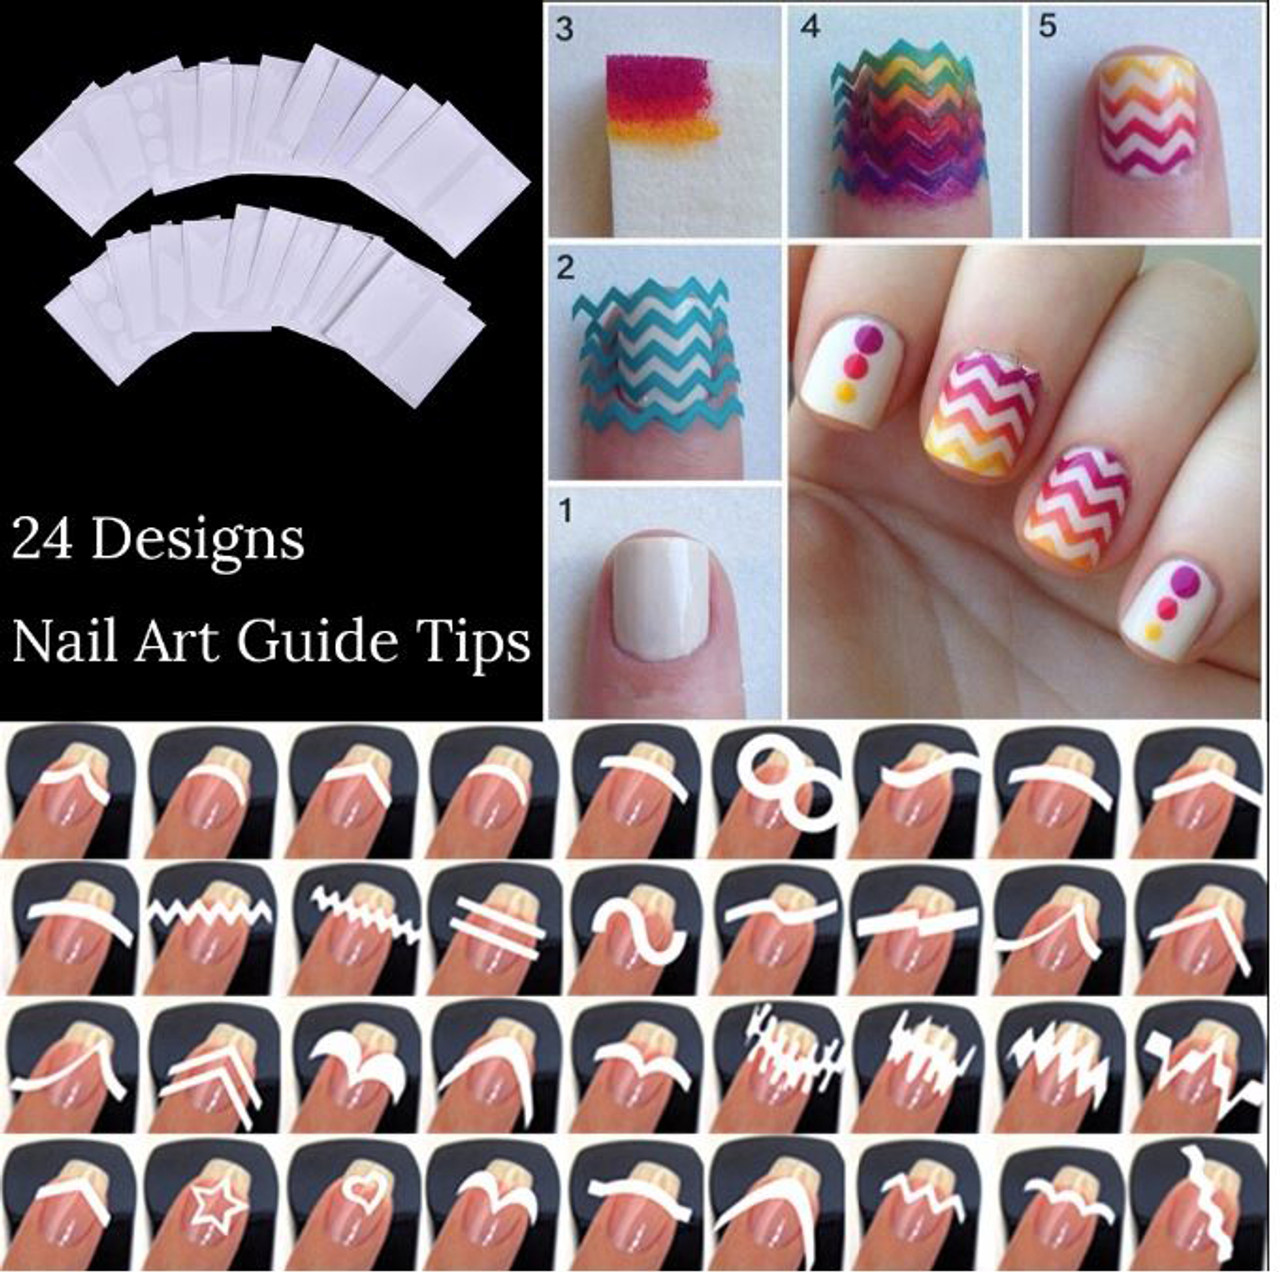 NDI beauty Nail Art French Tips Manicure Stickers - 24 Sheets / 24 Style Guide